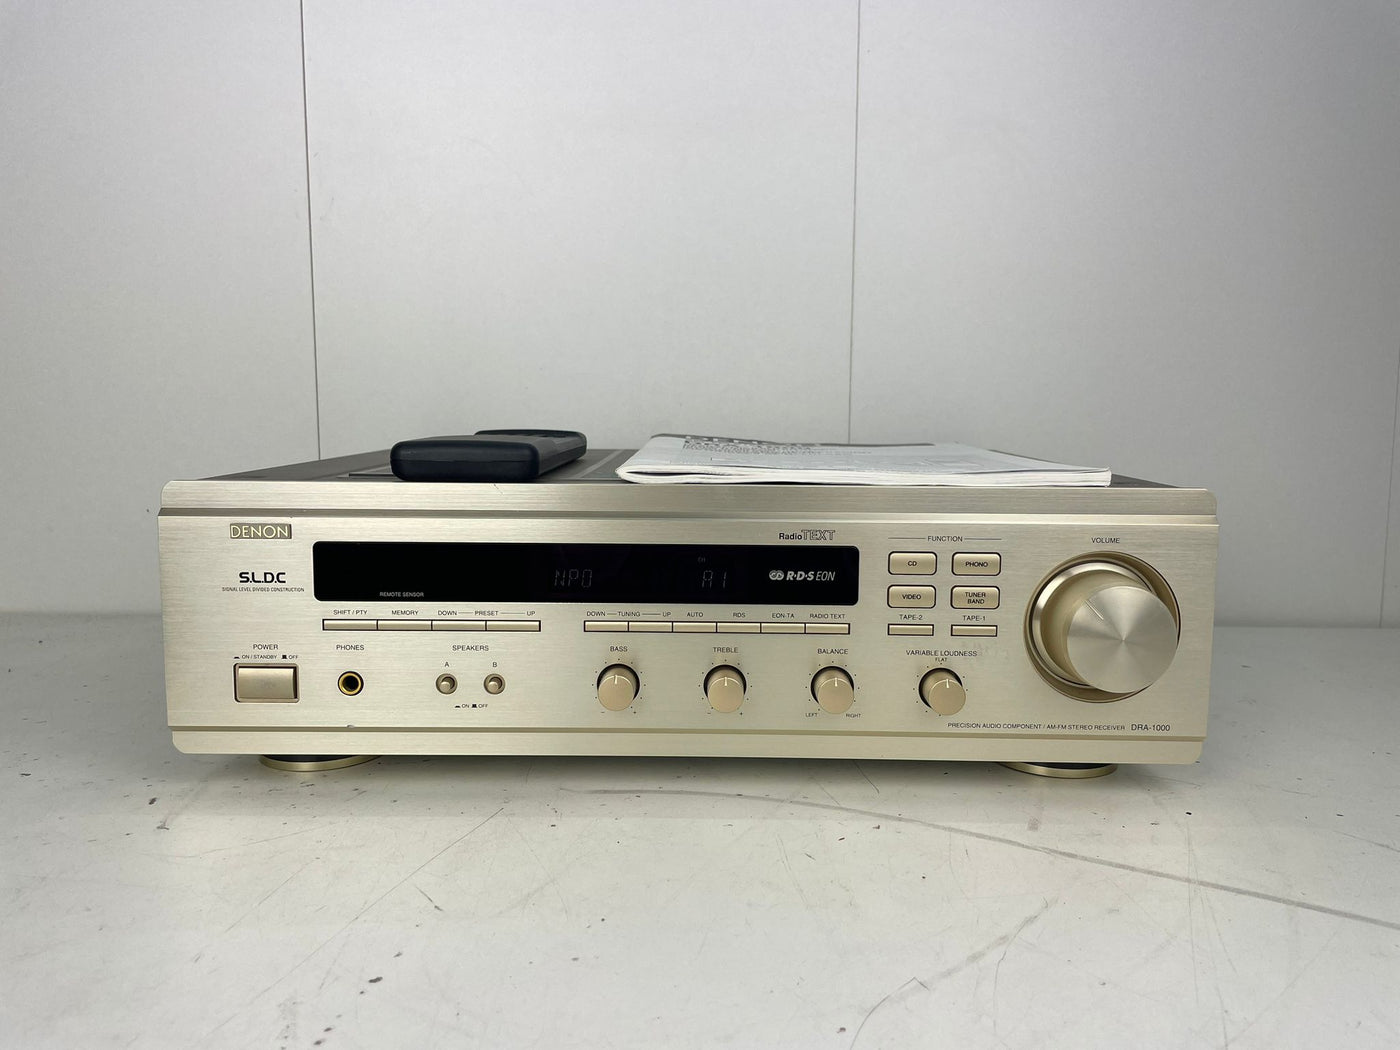 Denon DRA-1000 AM/FM Stereo Receiver